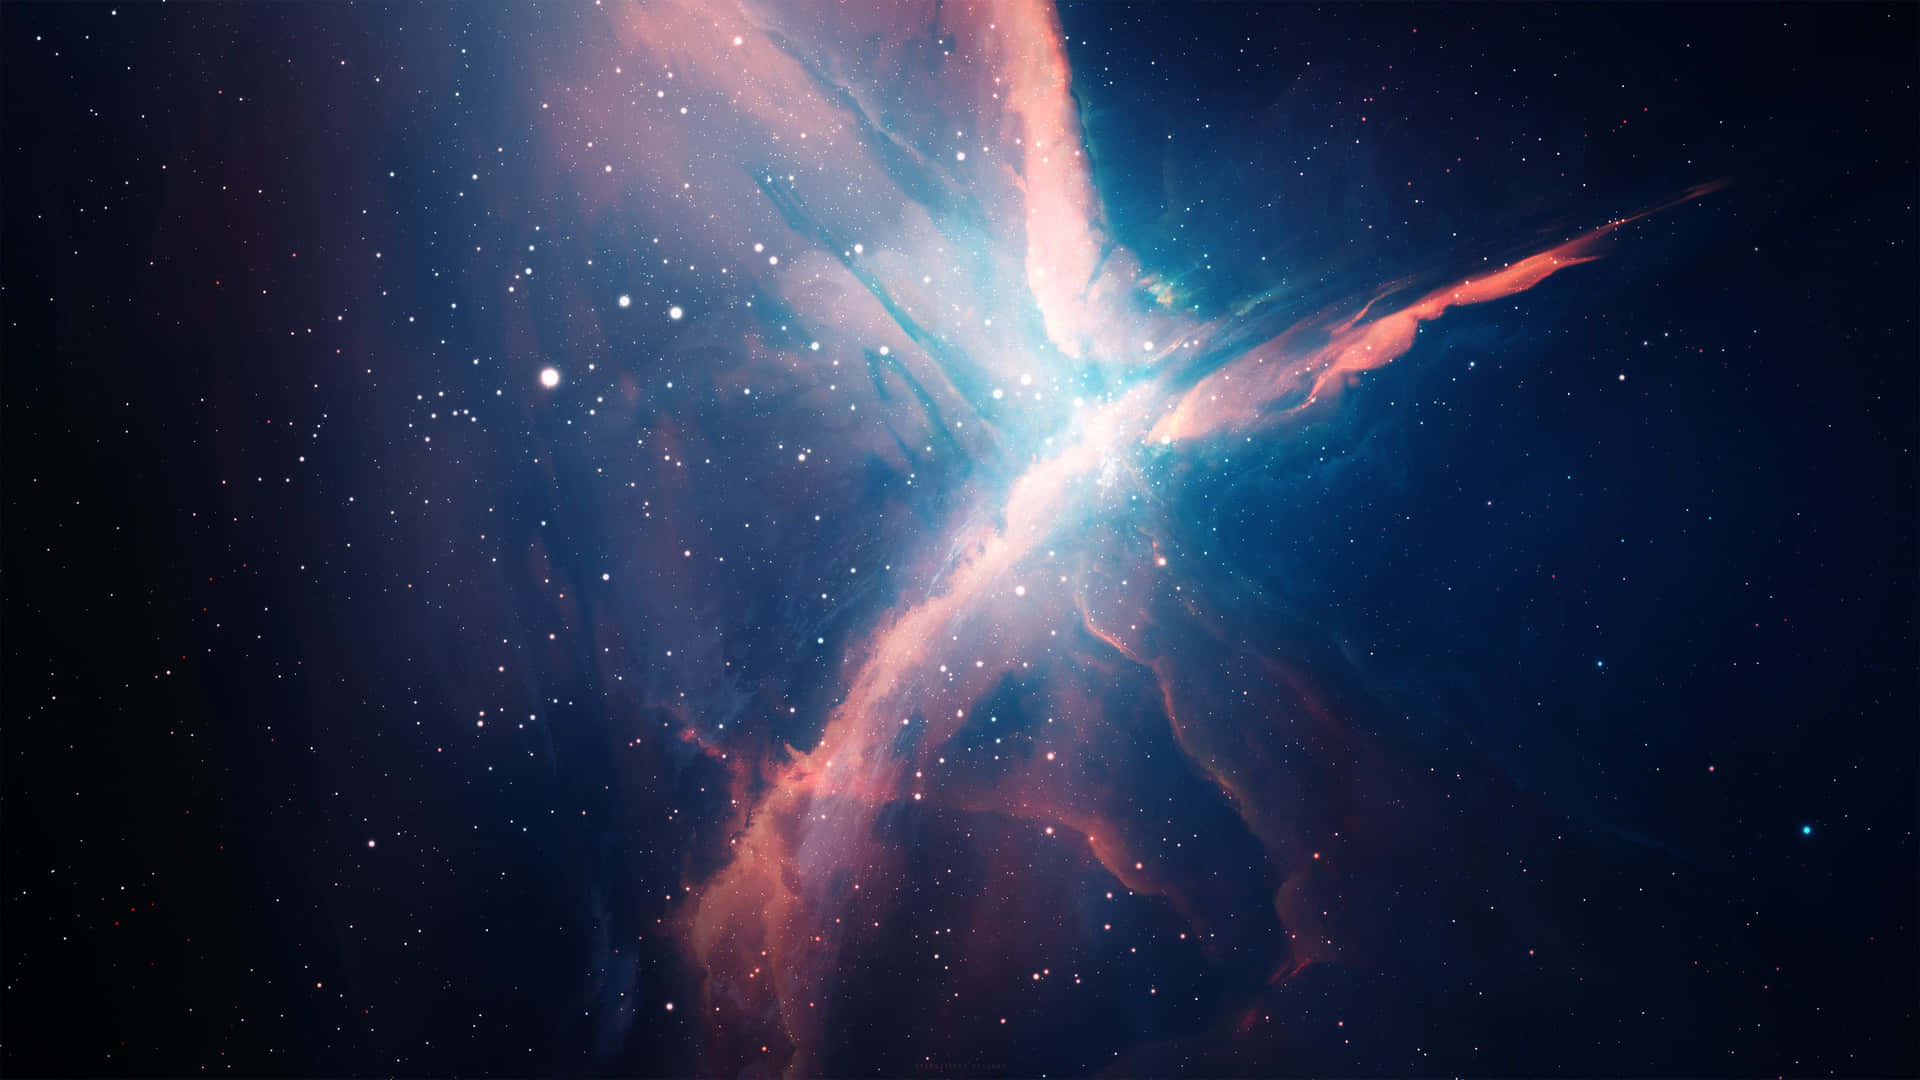 A glimpse into the vibrant space nebula Wallpaper